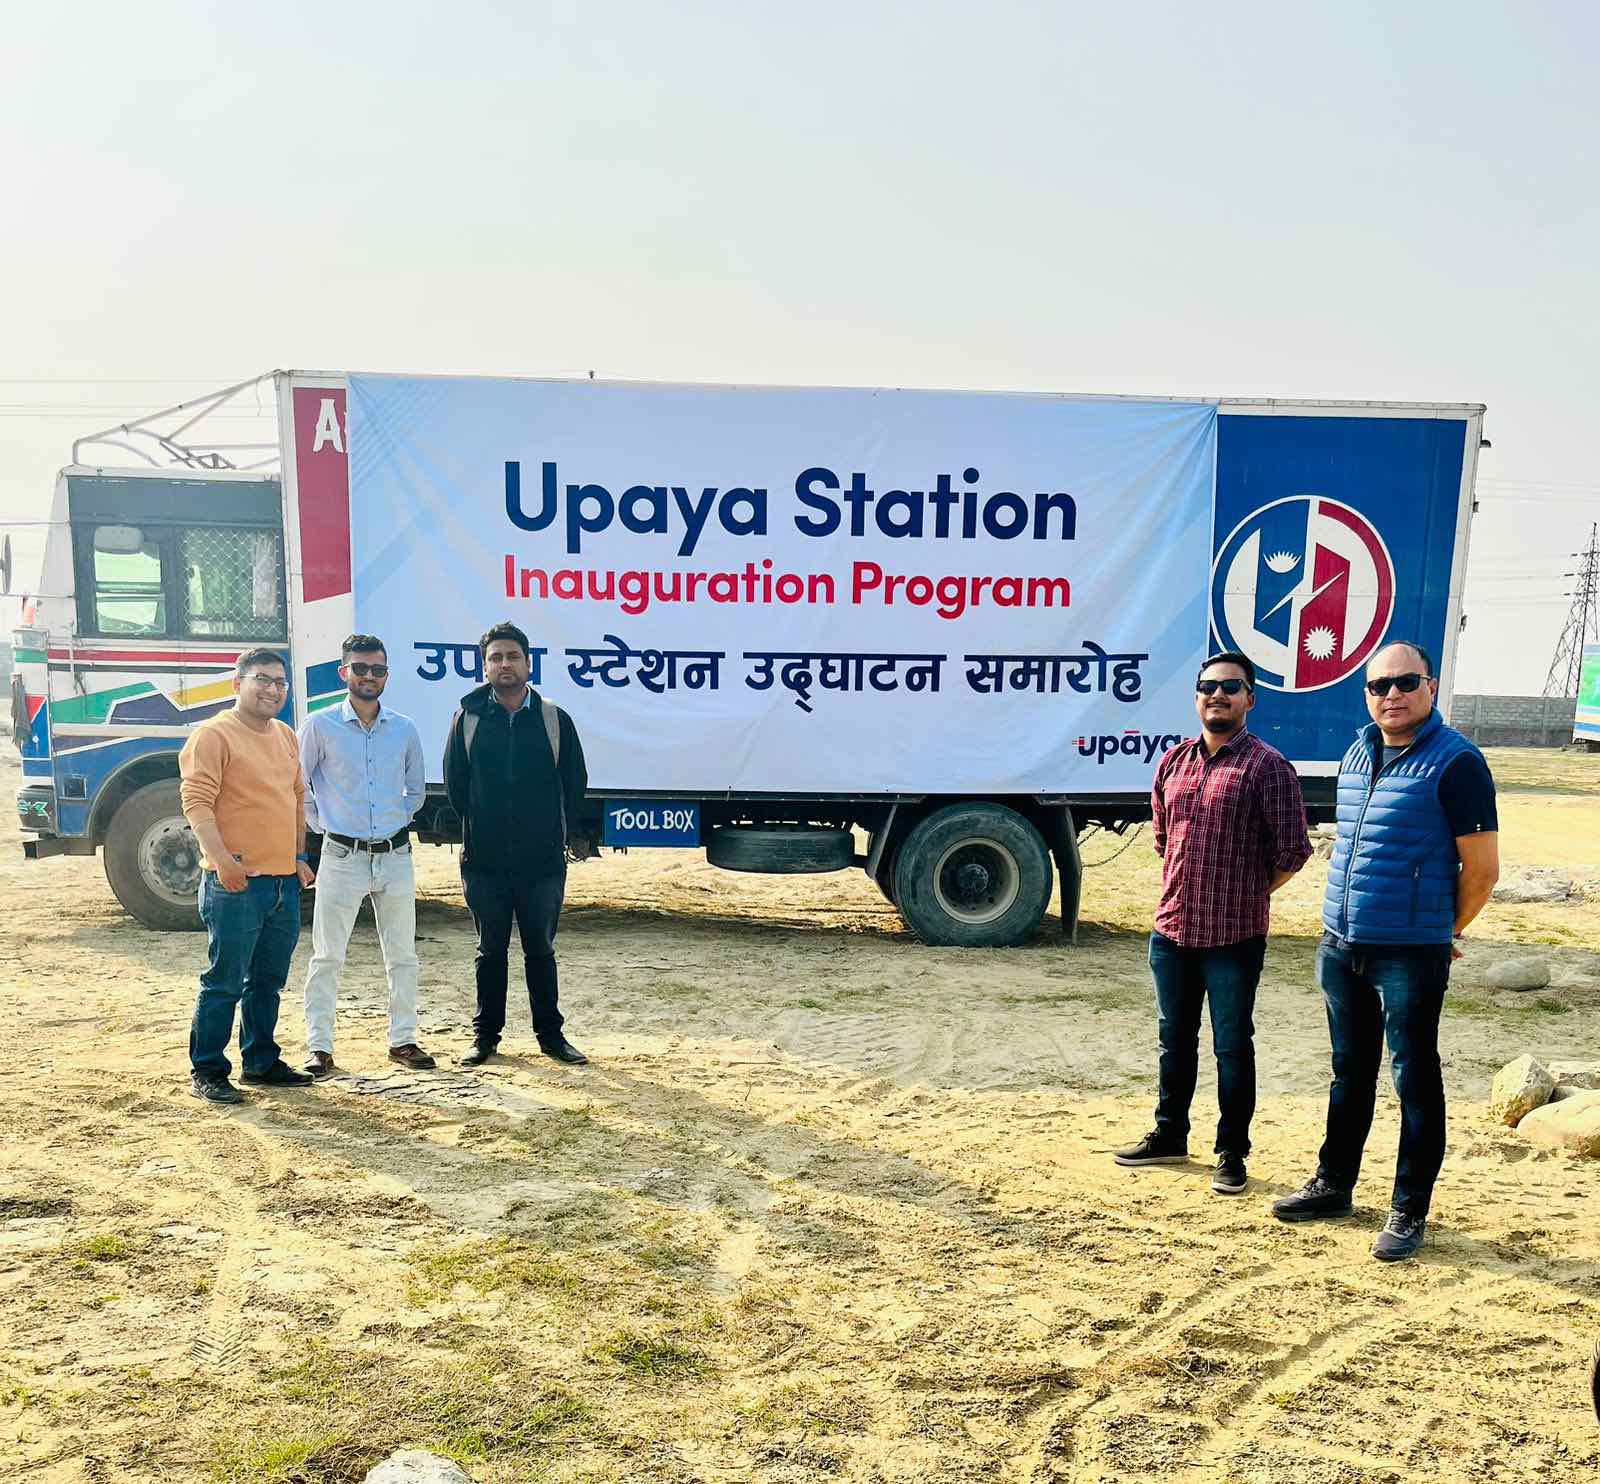 Upaya launches “Upaya Station” in Biratnagar